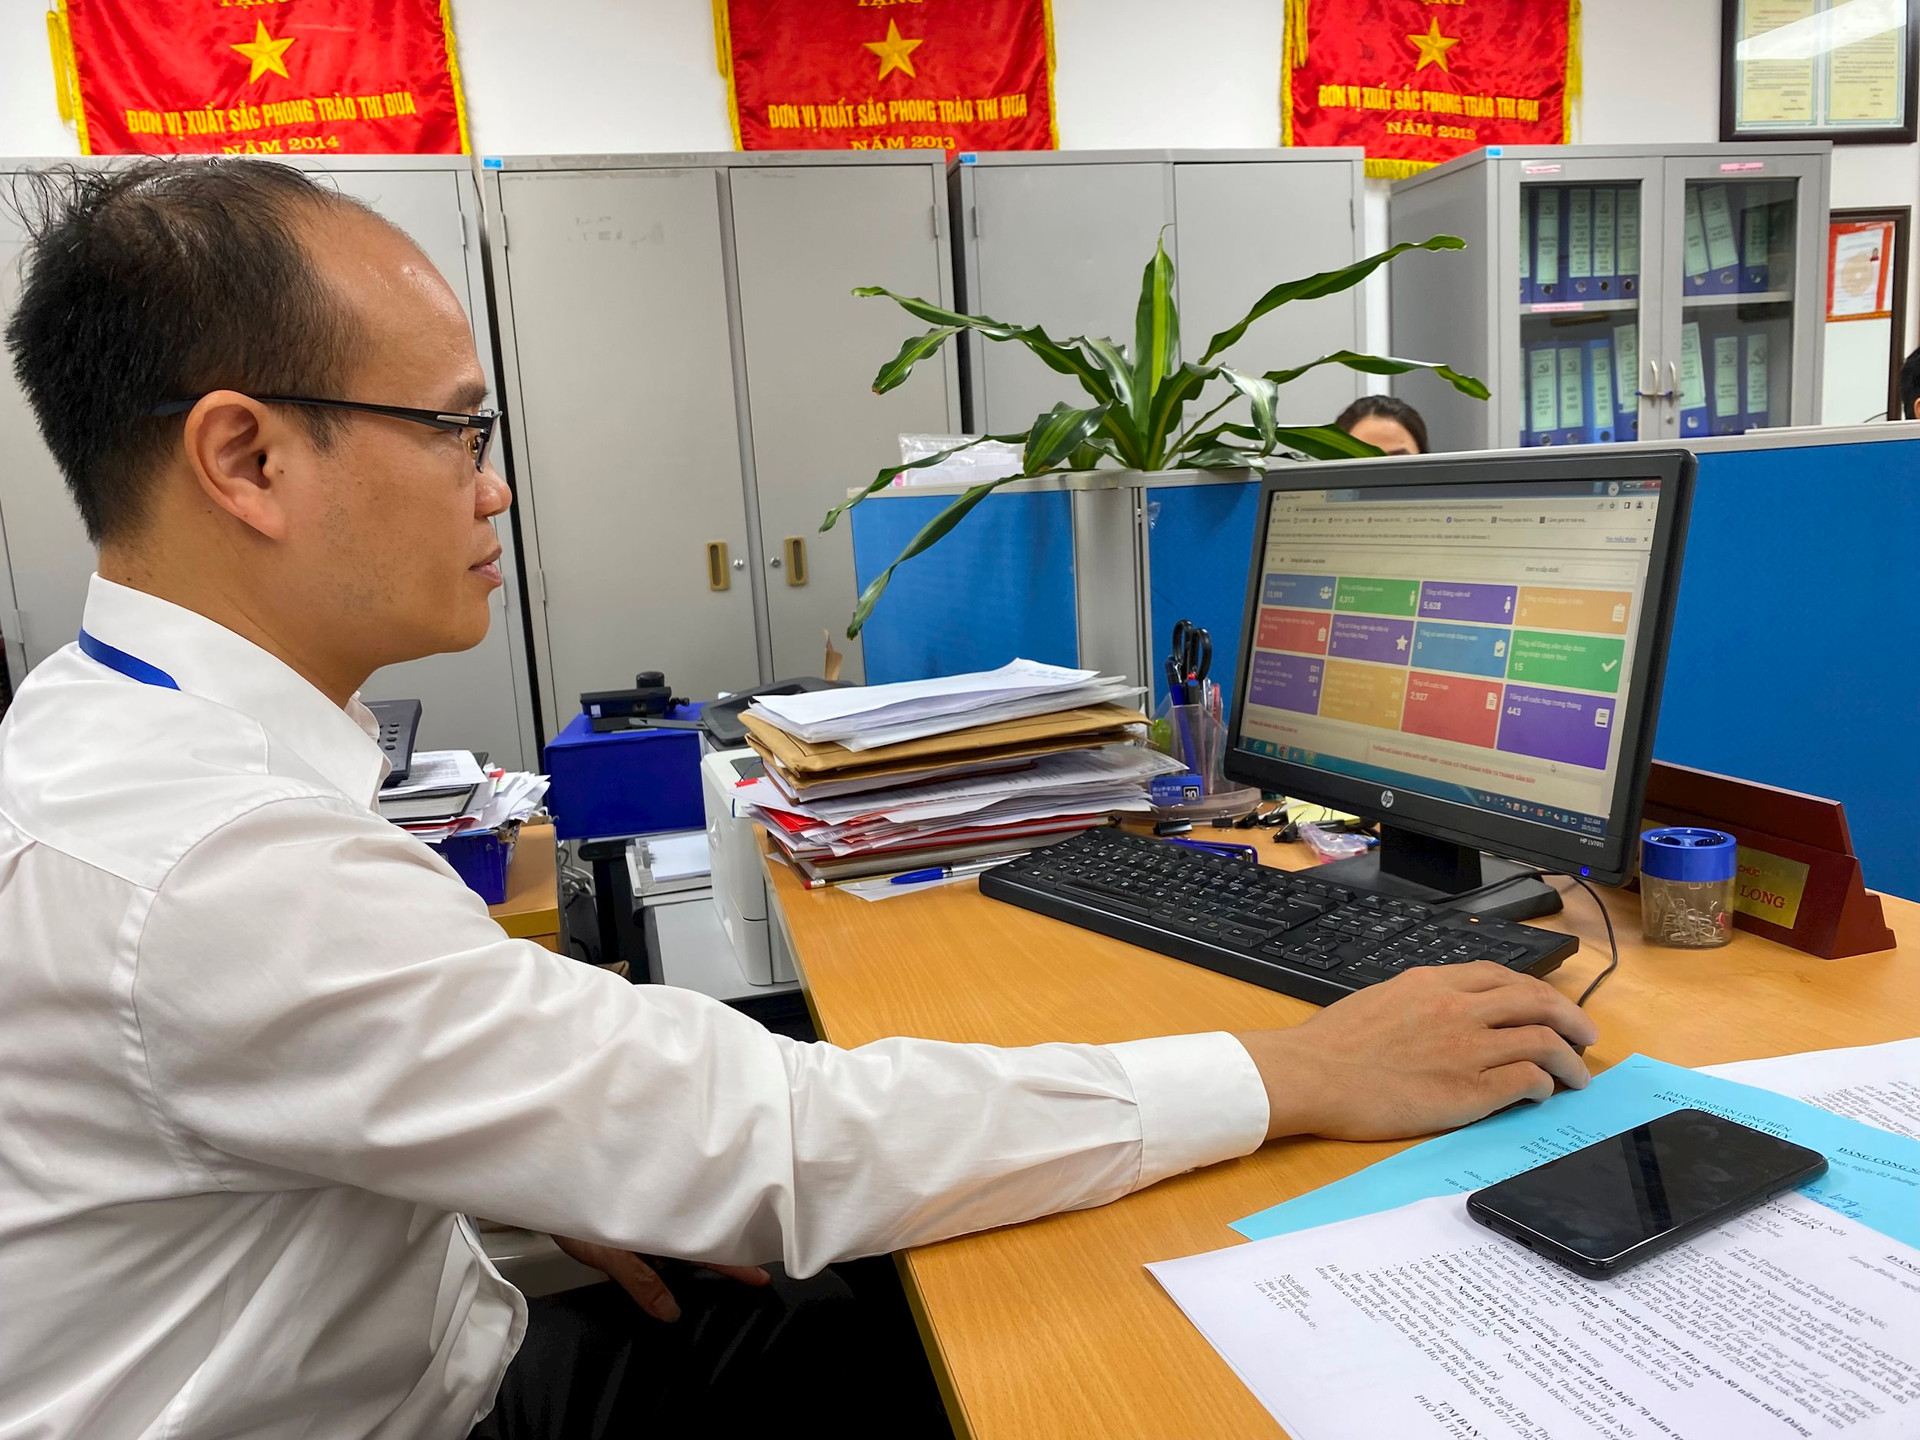 hó Trưởng ban Tổ chức Quận ủy Long Biên Nguyễn Xuân Long kiểm soát việc tổ chức sinh hoạt chi bộ ở cơ sở thông qua “Sổ tay đảng viên điện tử” trên máy tính.